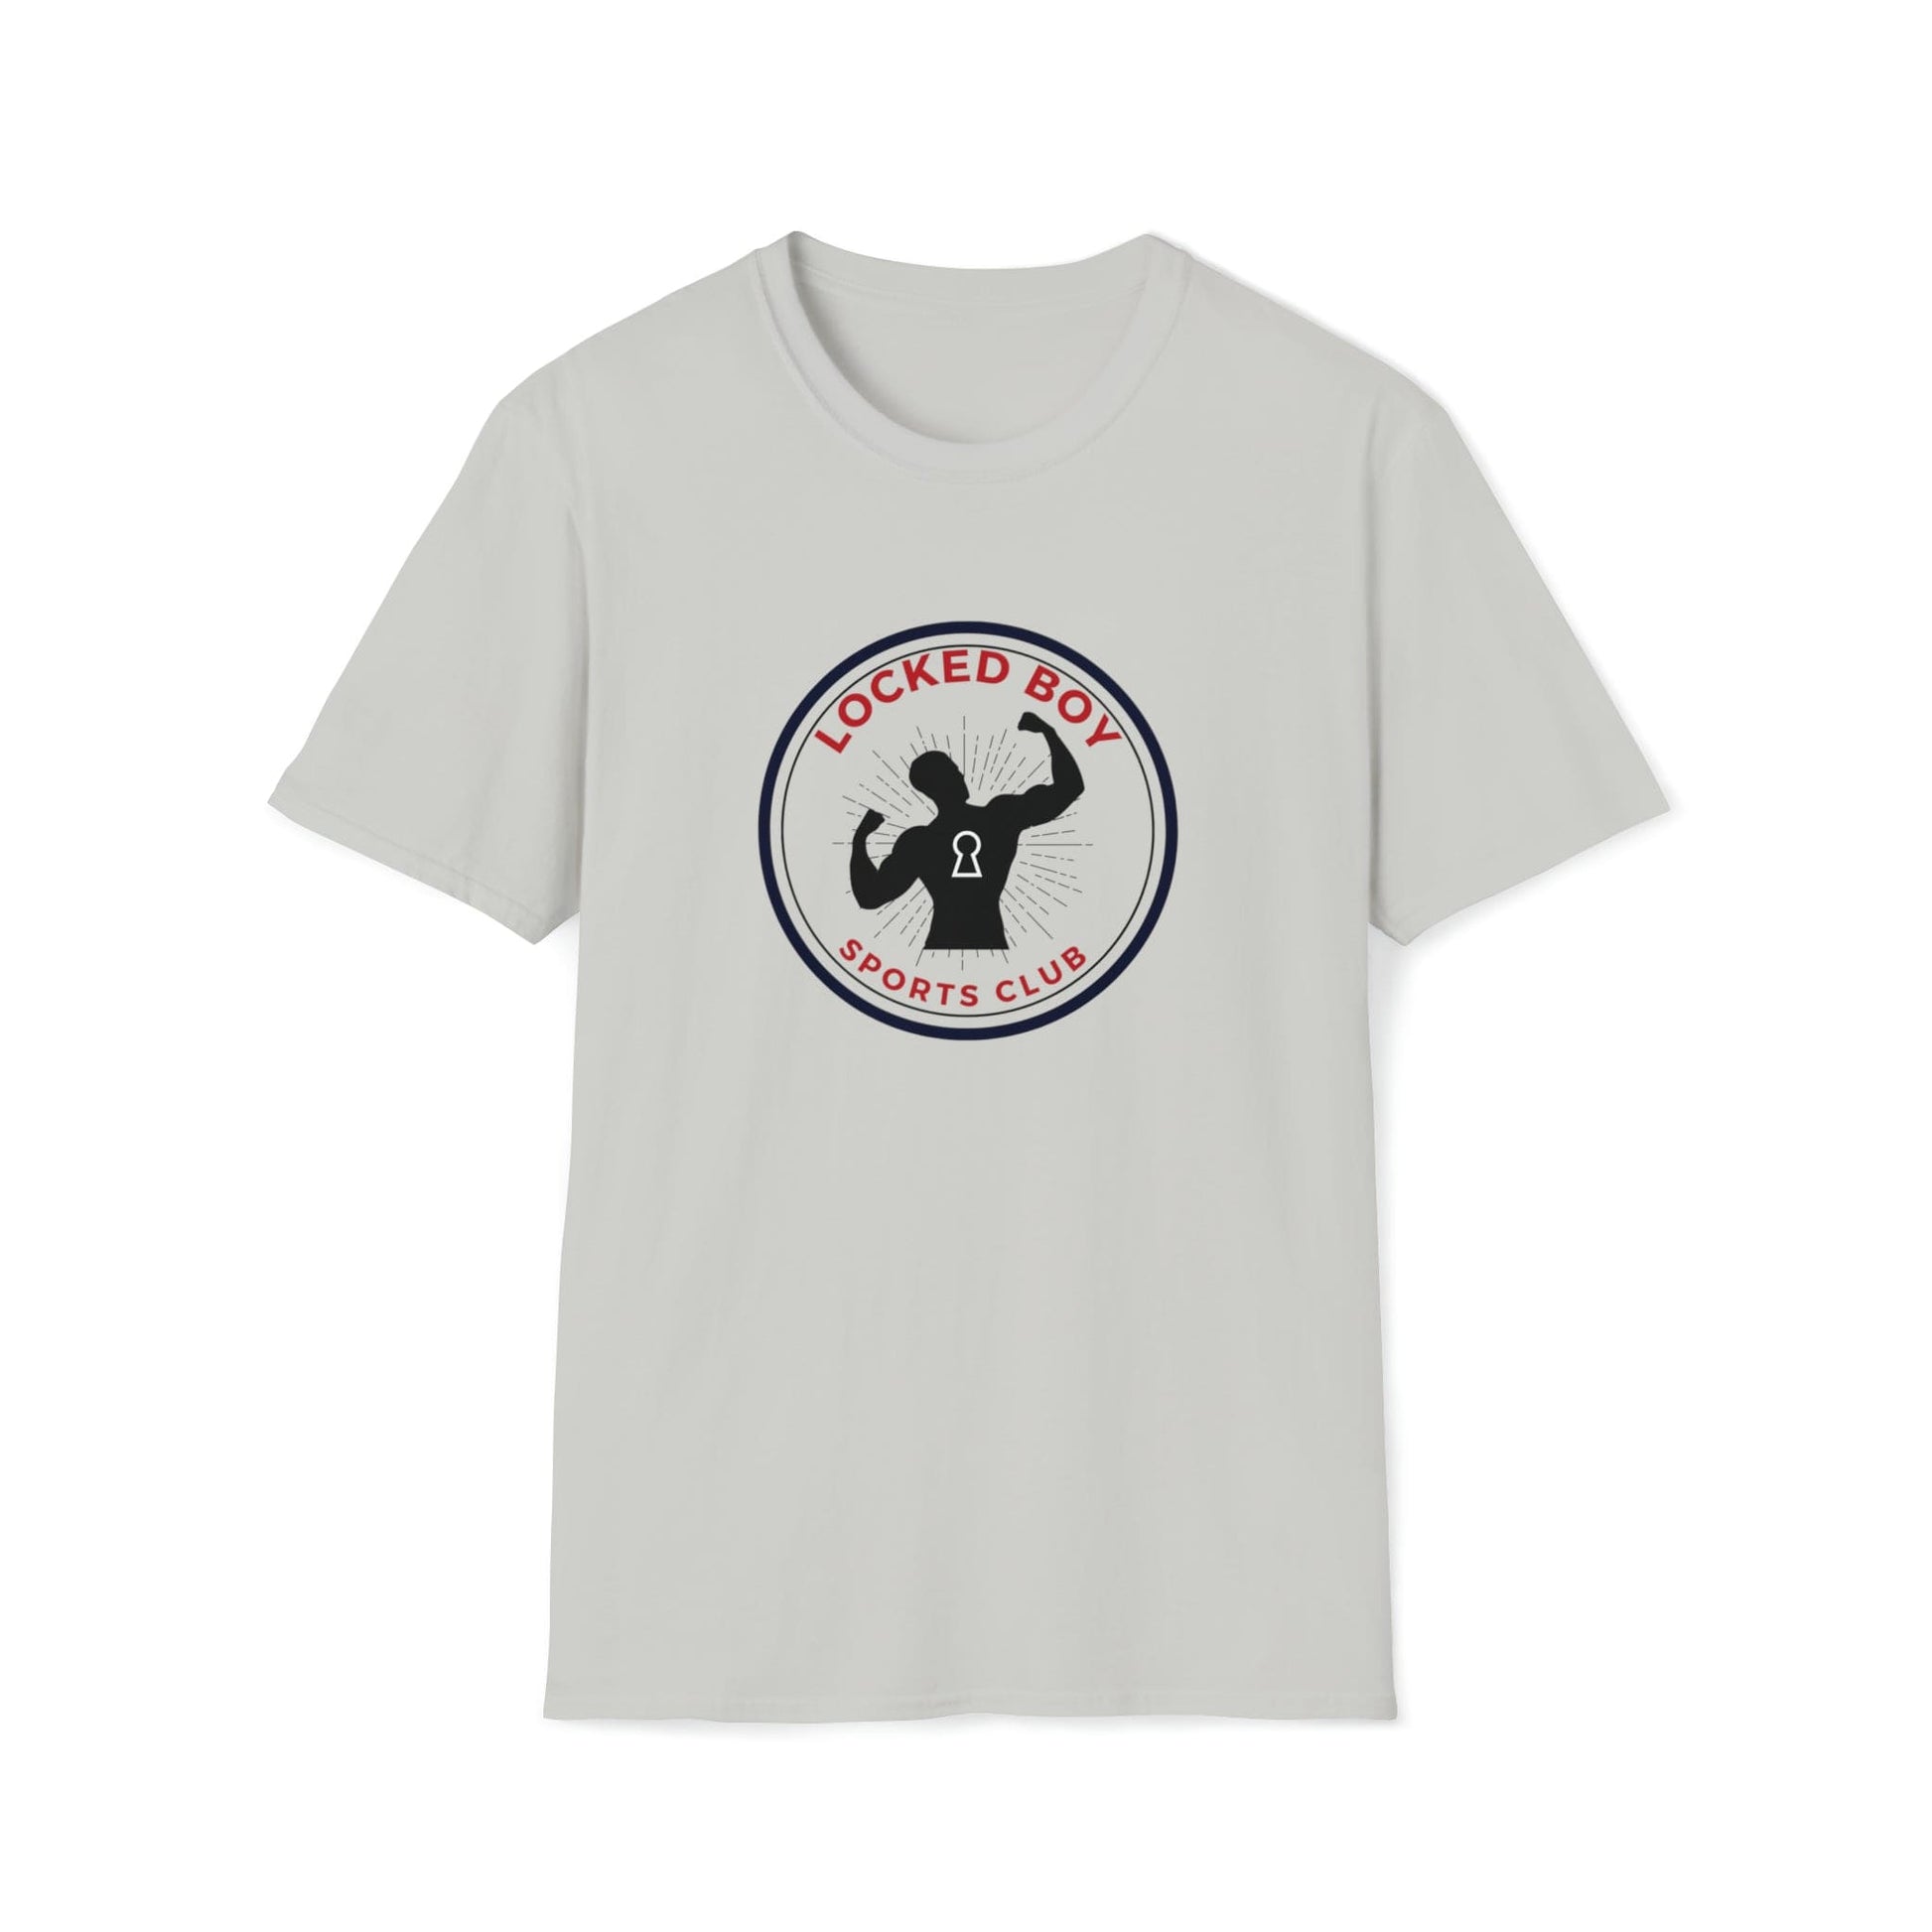 T-Shirt Ice Grey / S LockedBoy Sports Club - Chastity Tshirt LEATHERDADDY BATOR